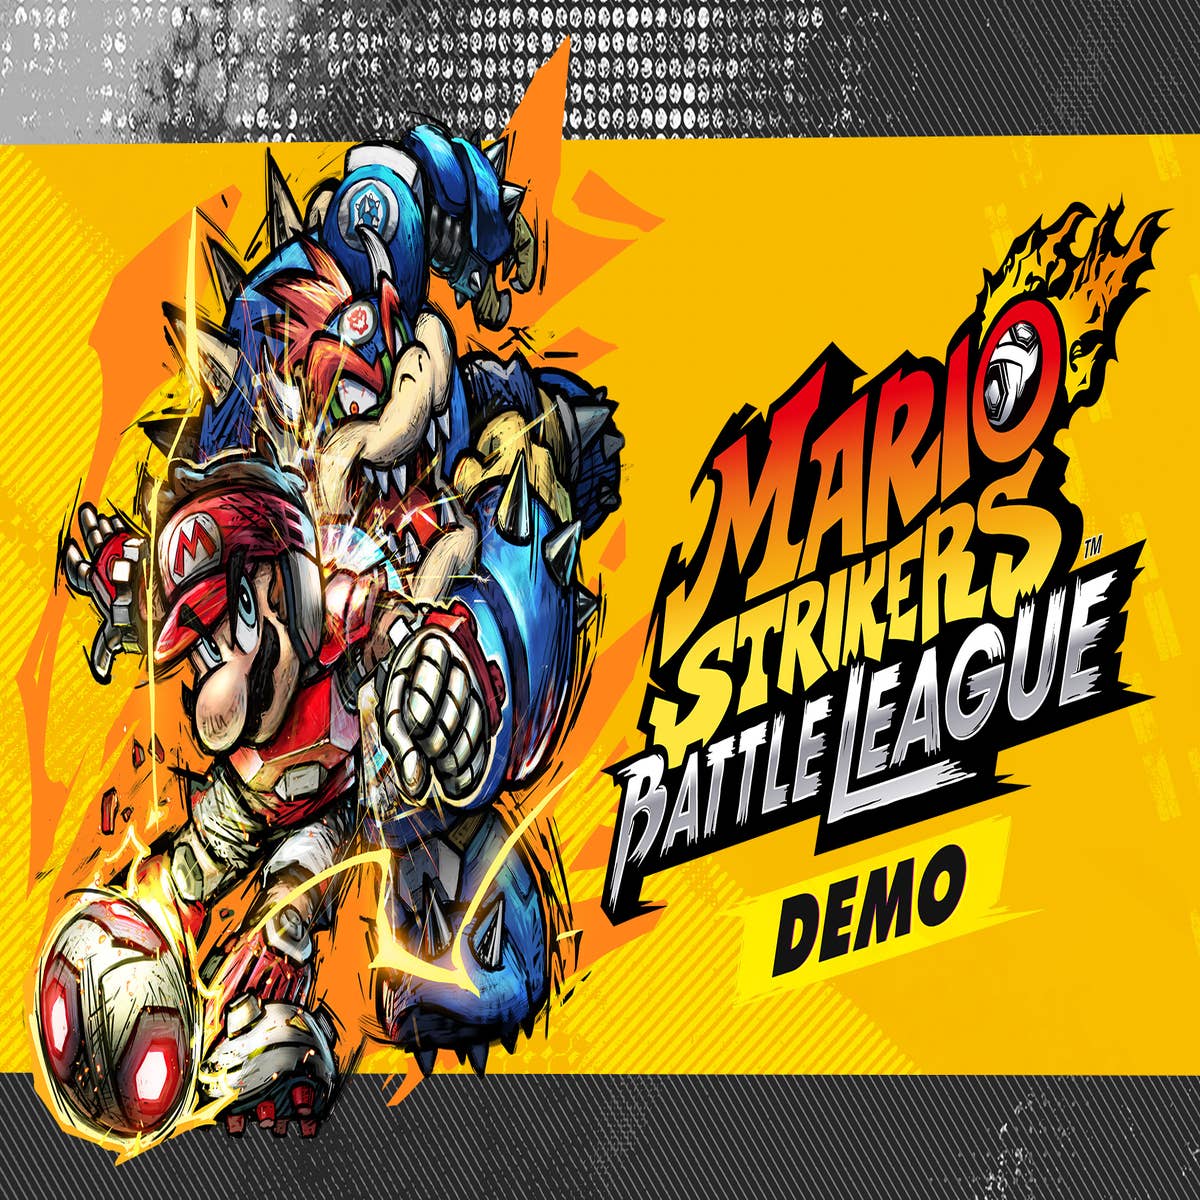 Mario Strikers: Battle League é novo jogo de futebol para o